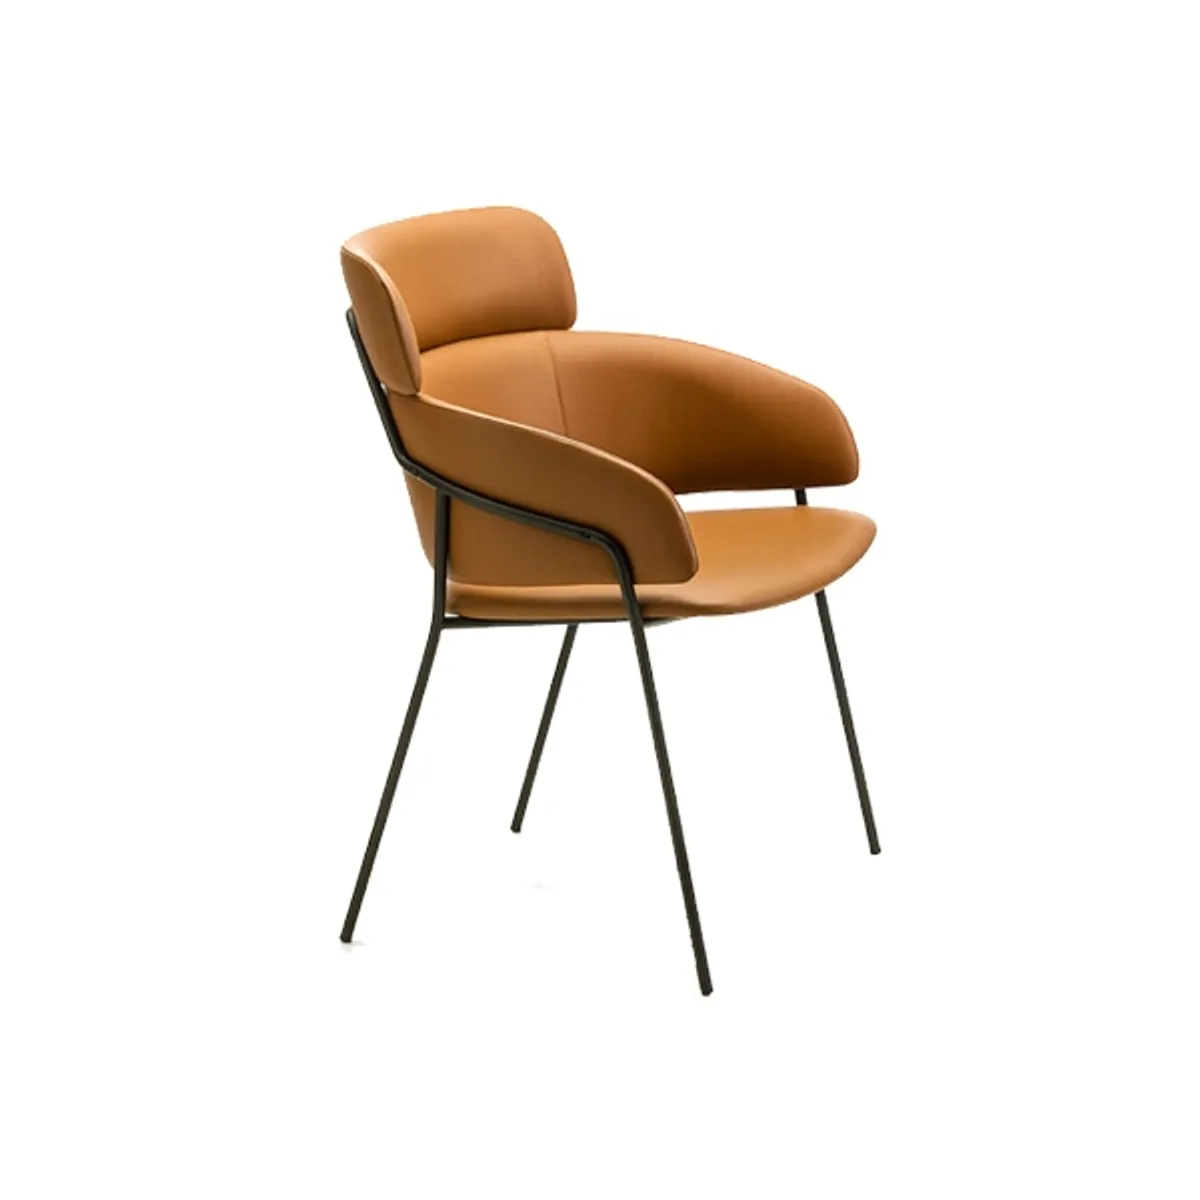 Web Portobello Chair In Tan Leather